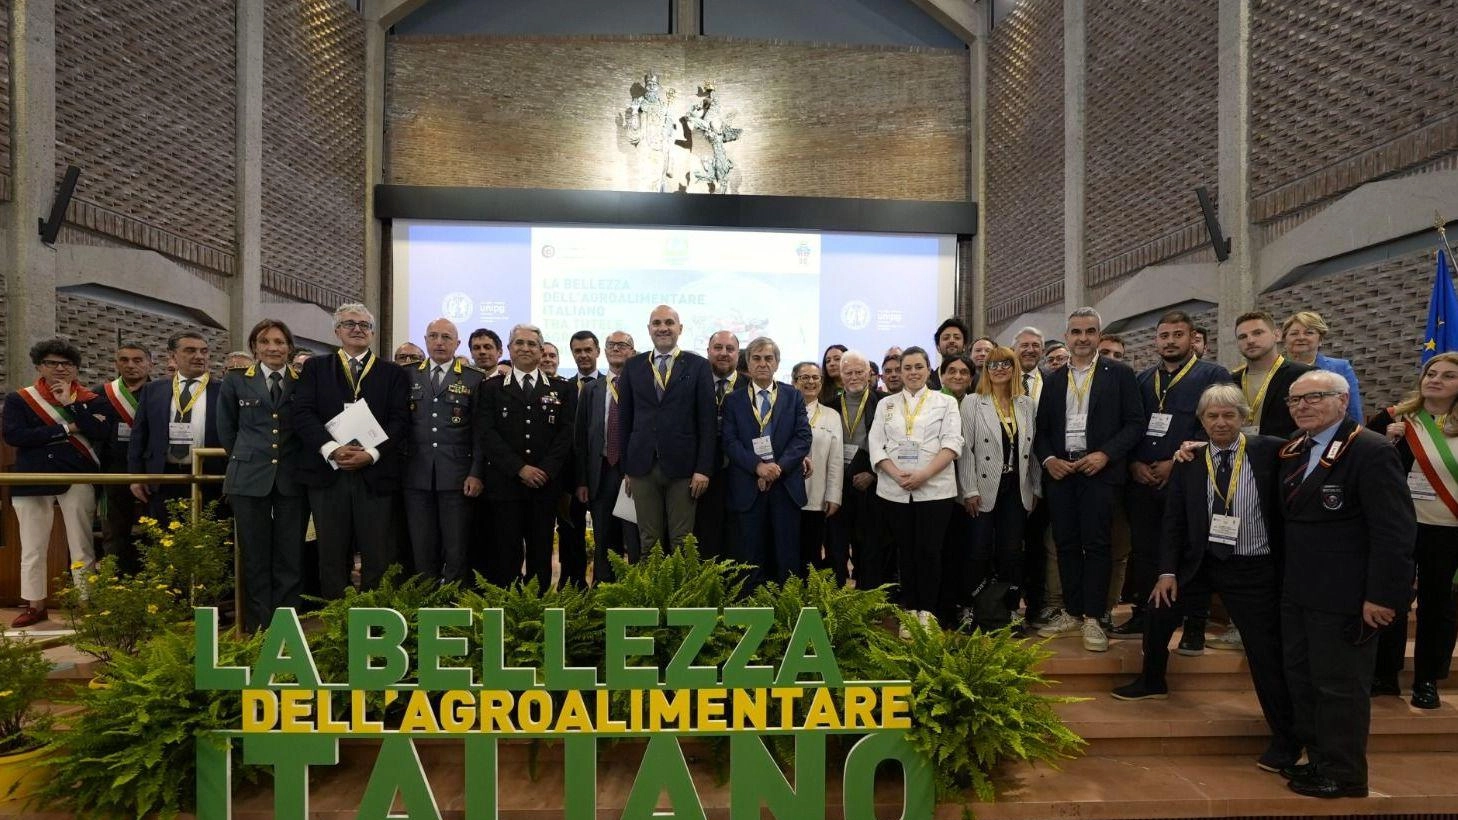 Agroalimentare "Orgoglio made in Italy  Ma va protetto dalle nuove minacce"